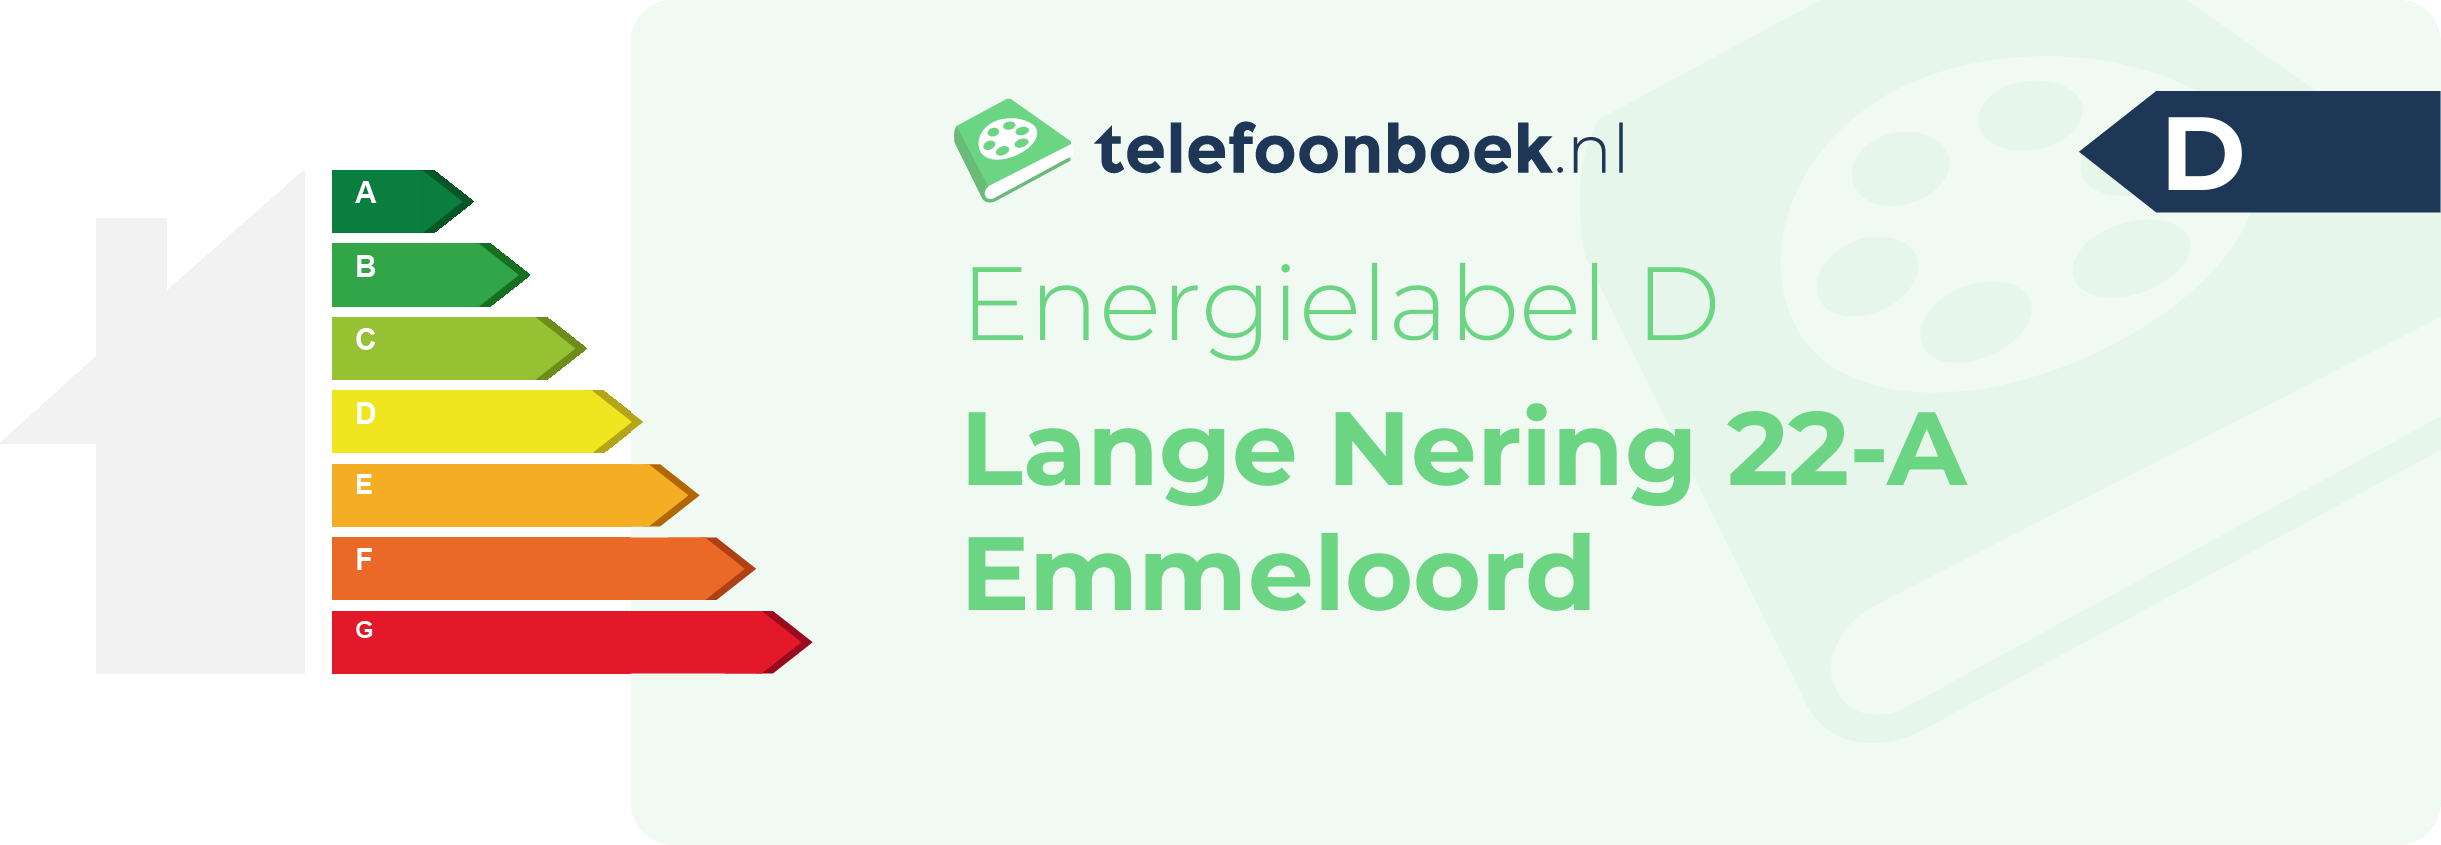 Energielabel Lange Nering 22-A Emmeloord